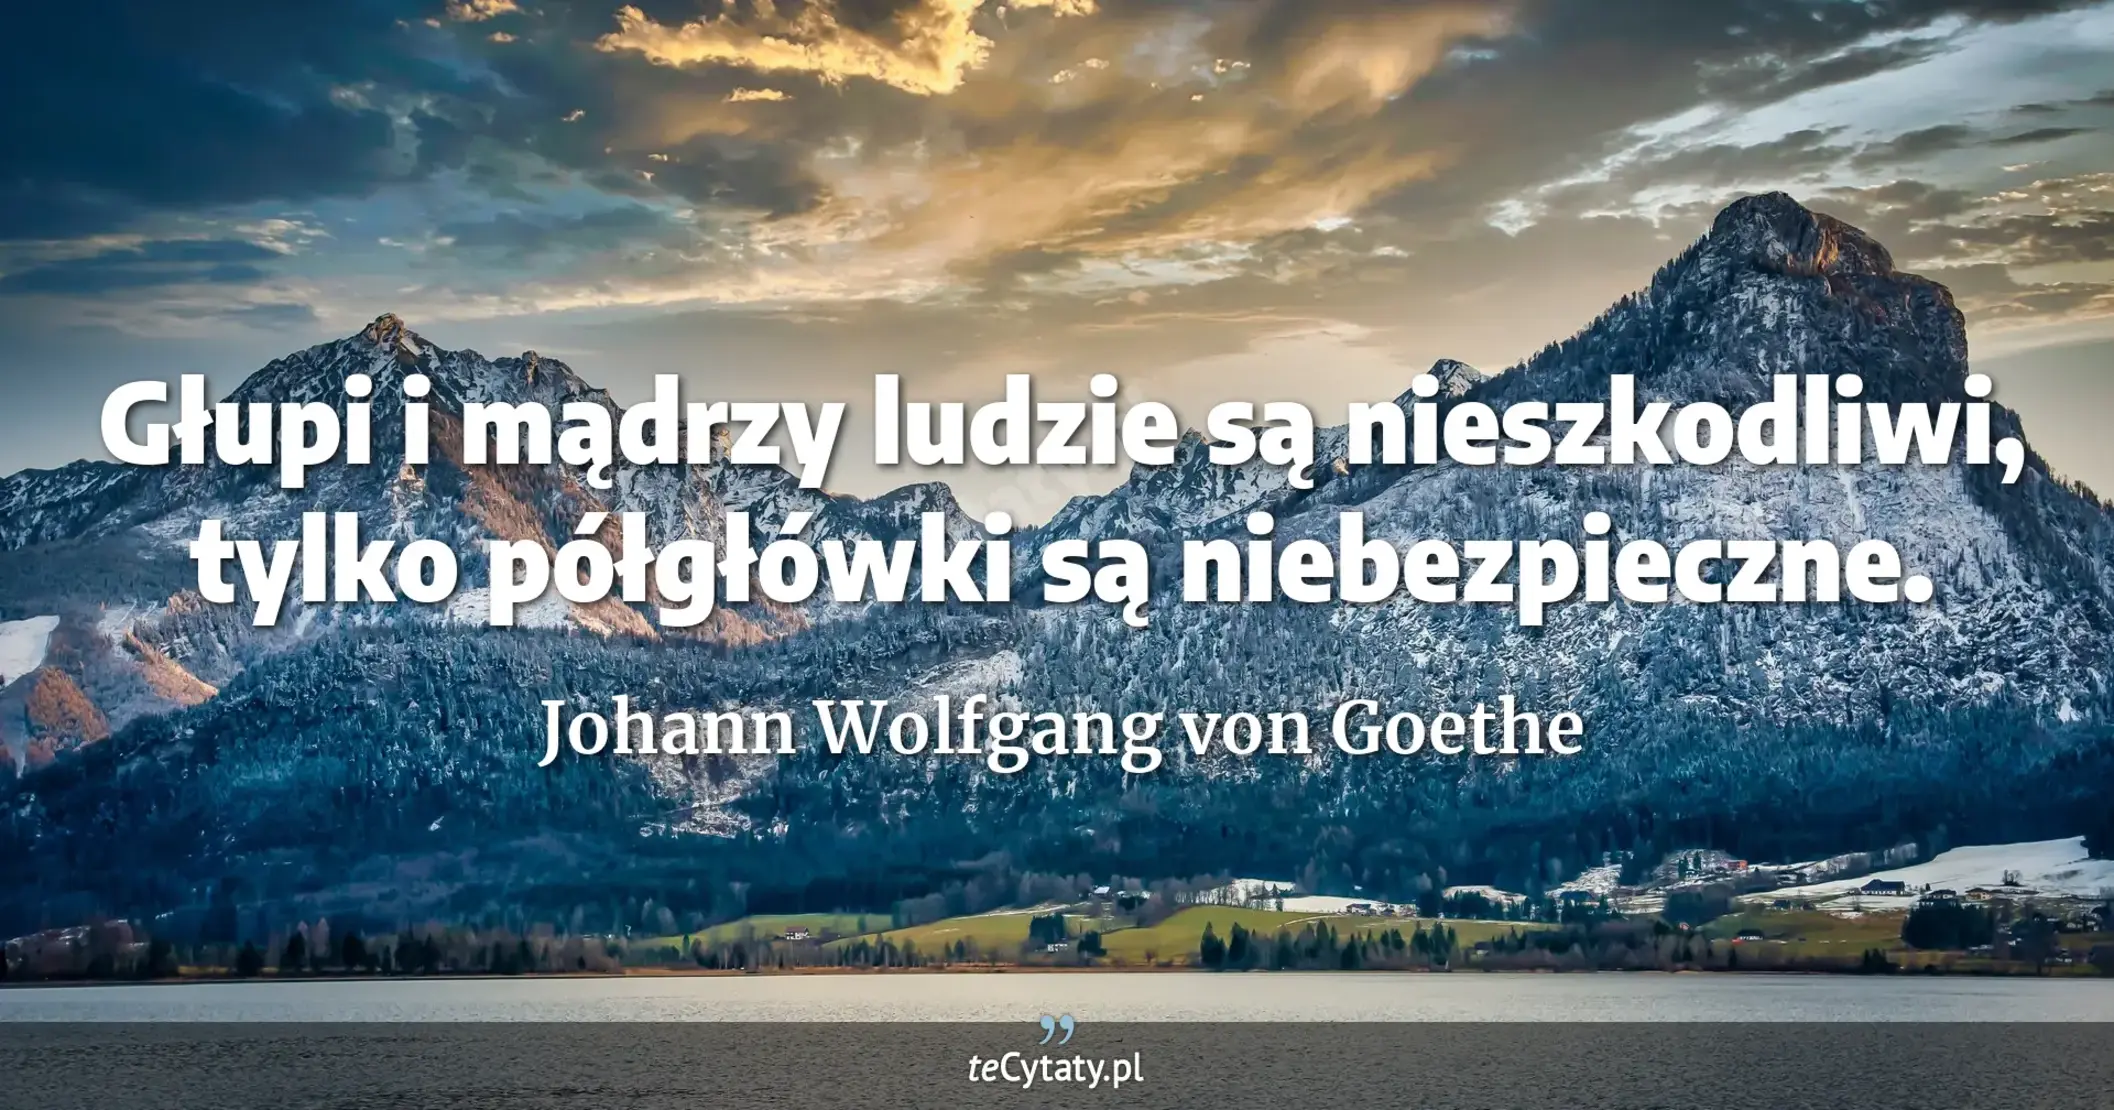 Głupi i mądrzy ludzie są nieszkodliwi, tylko półgłówki są niebezpieczne. - Johann Wolfgang von Goethe